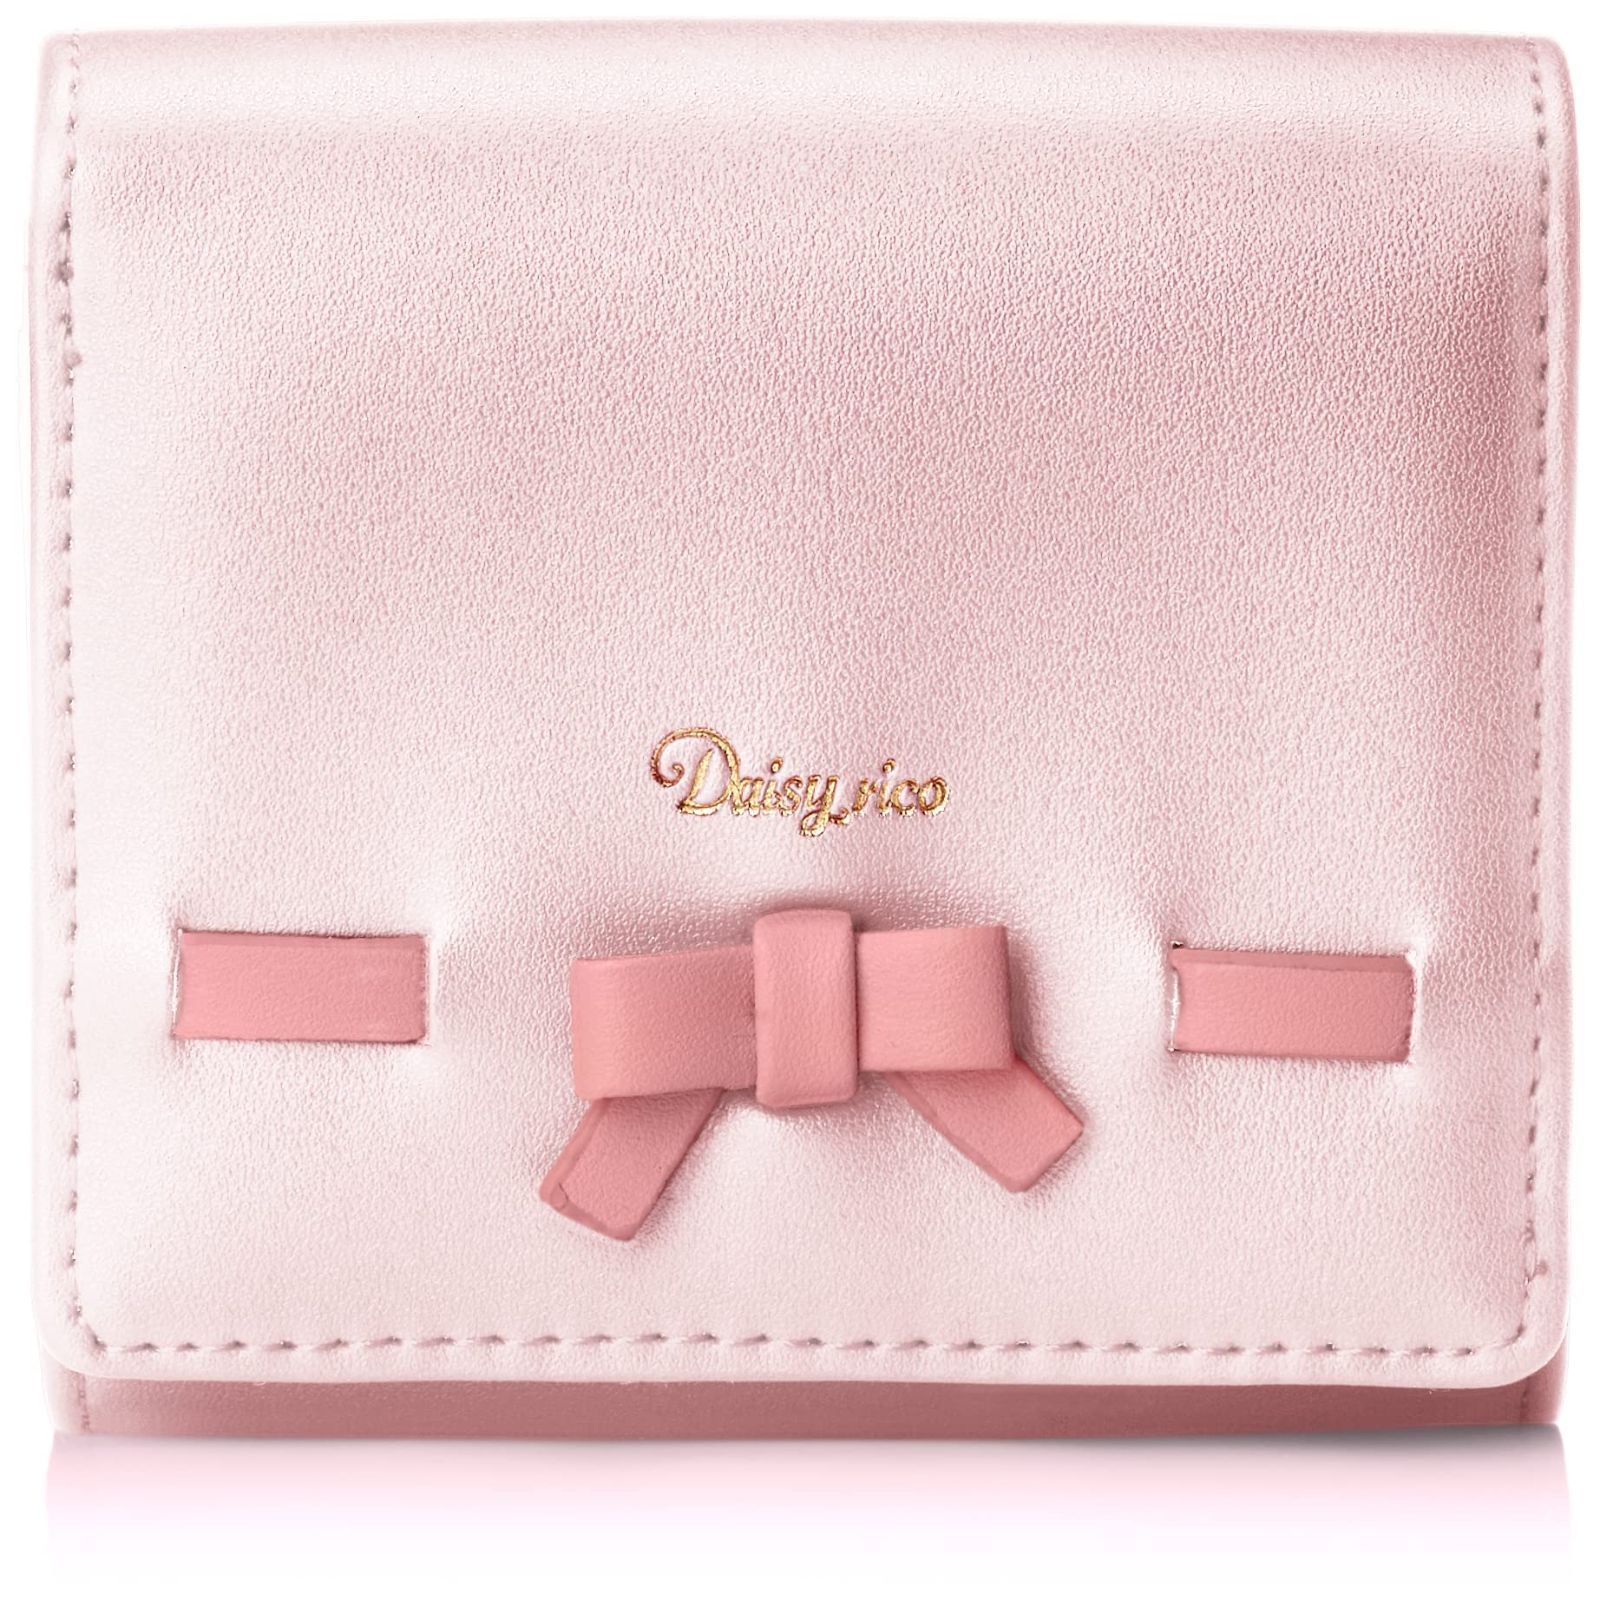 人気新品 Dior スムーススキン 長財布 ロゴチャーム バイカラー ピンク ...